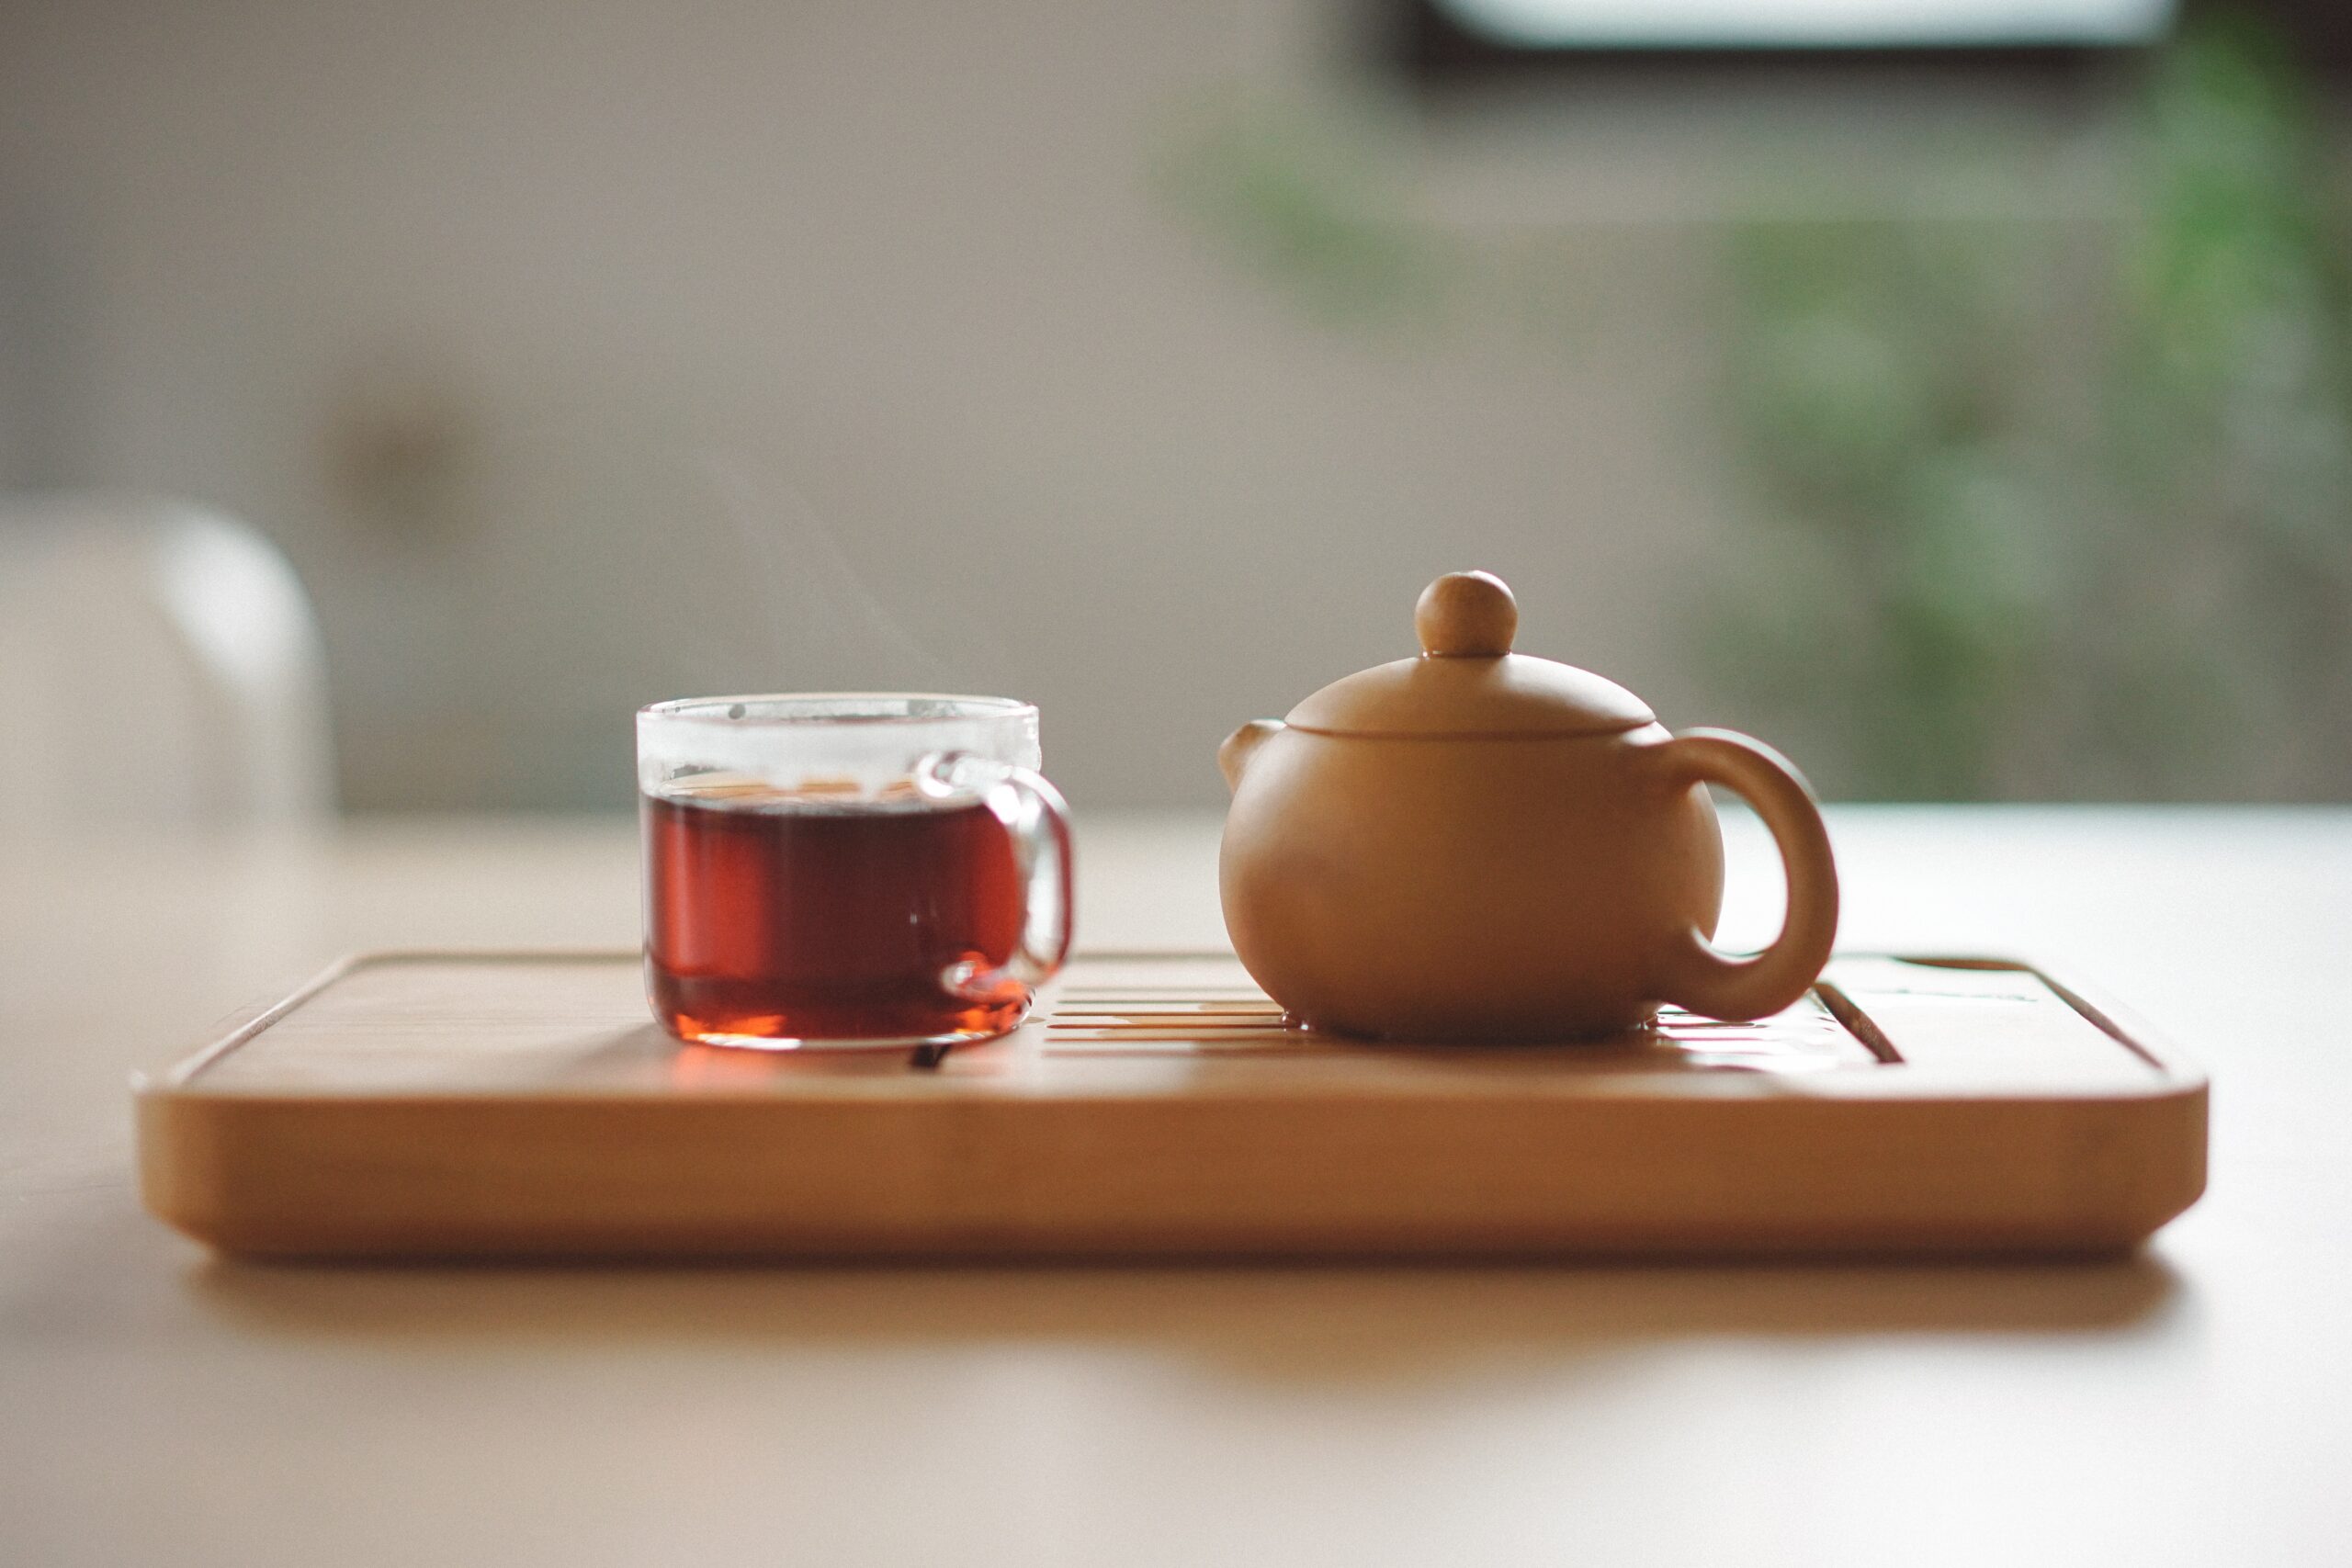 A cup of tea and a tea pot